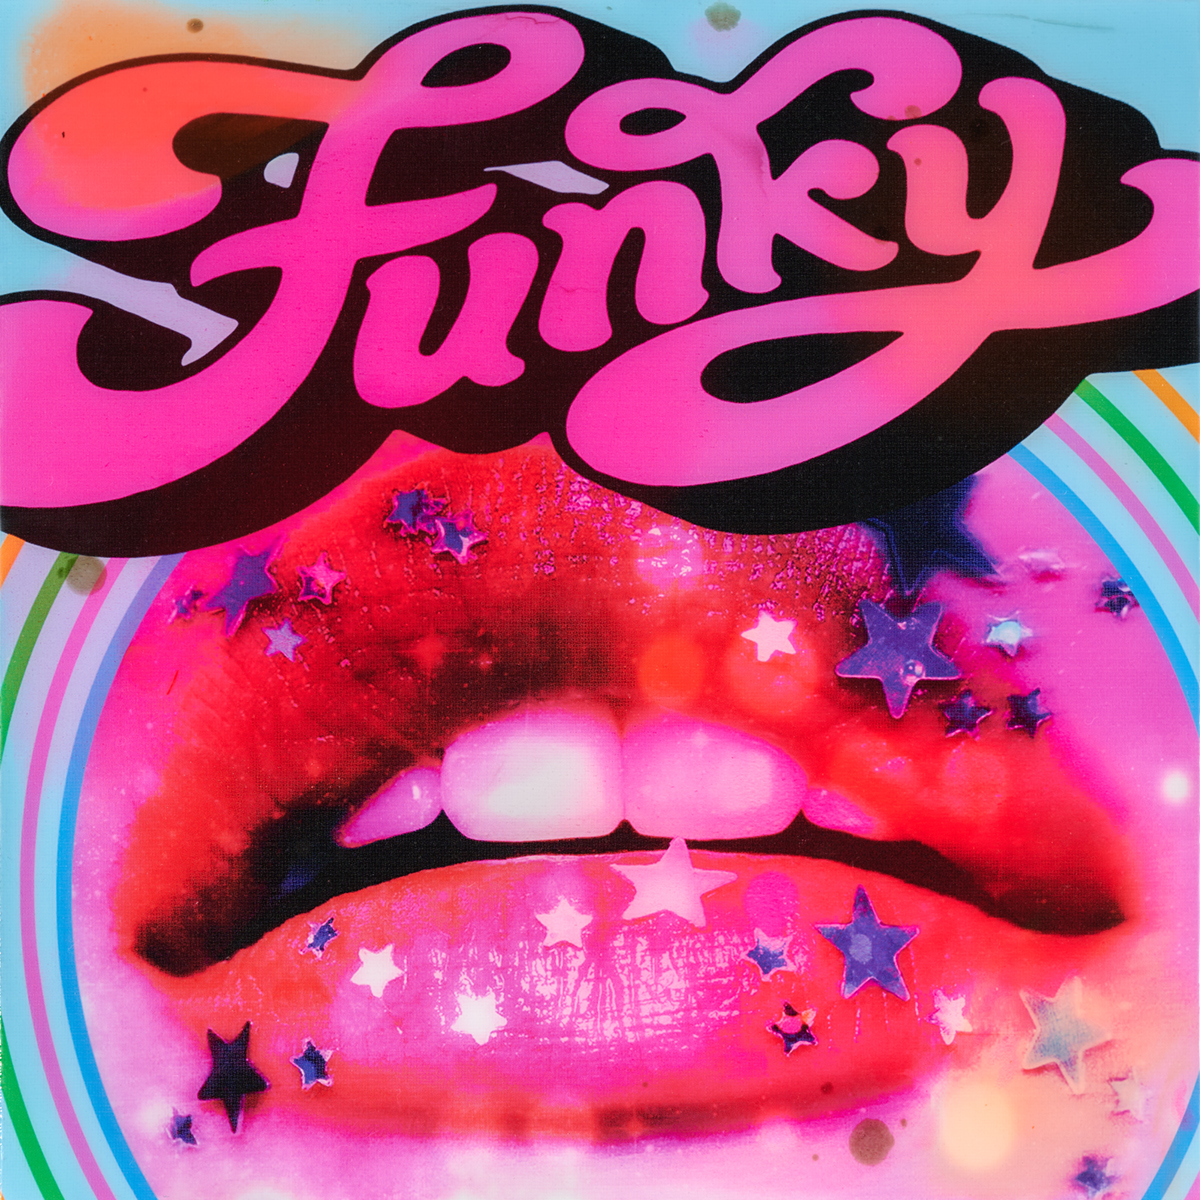 Funky - Epoxy - 2020